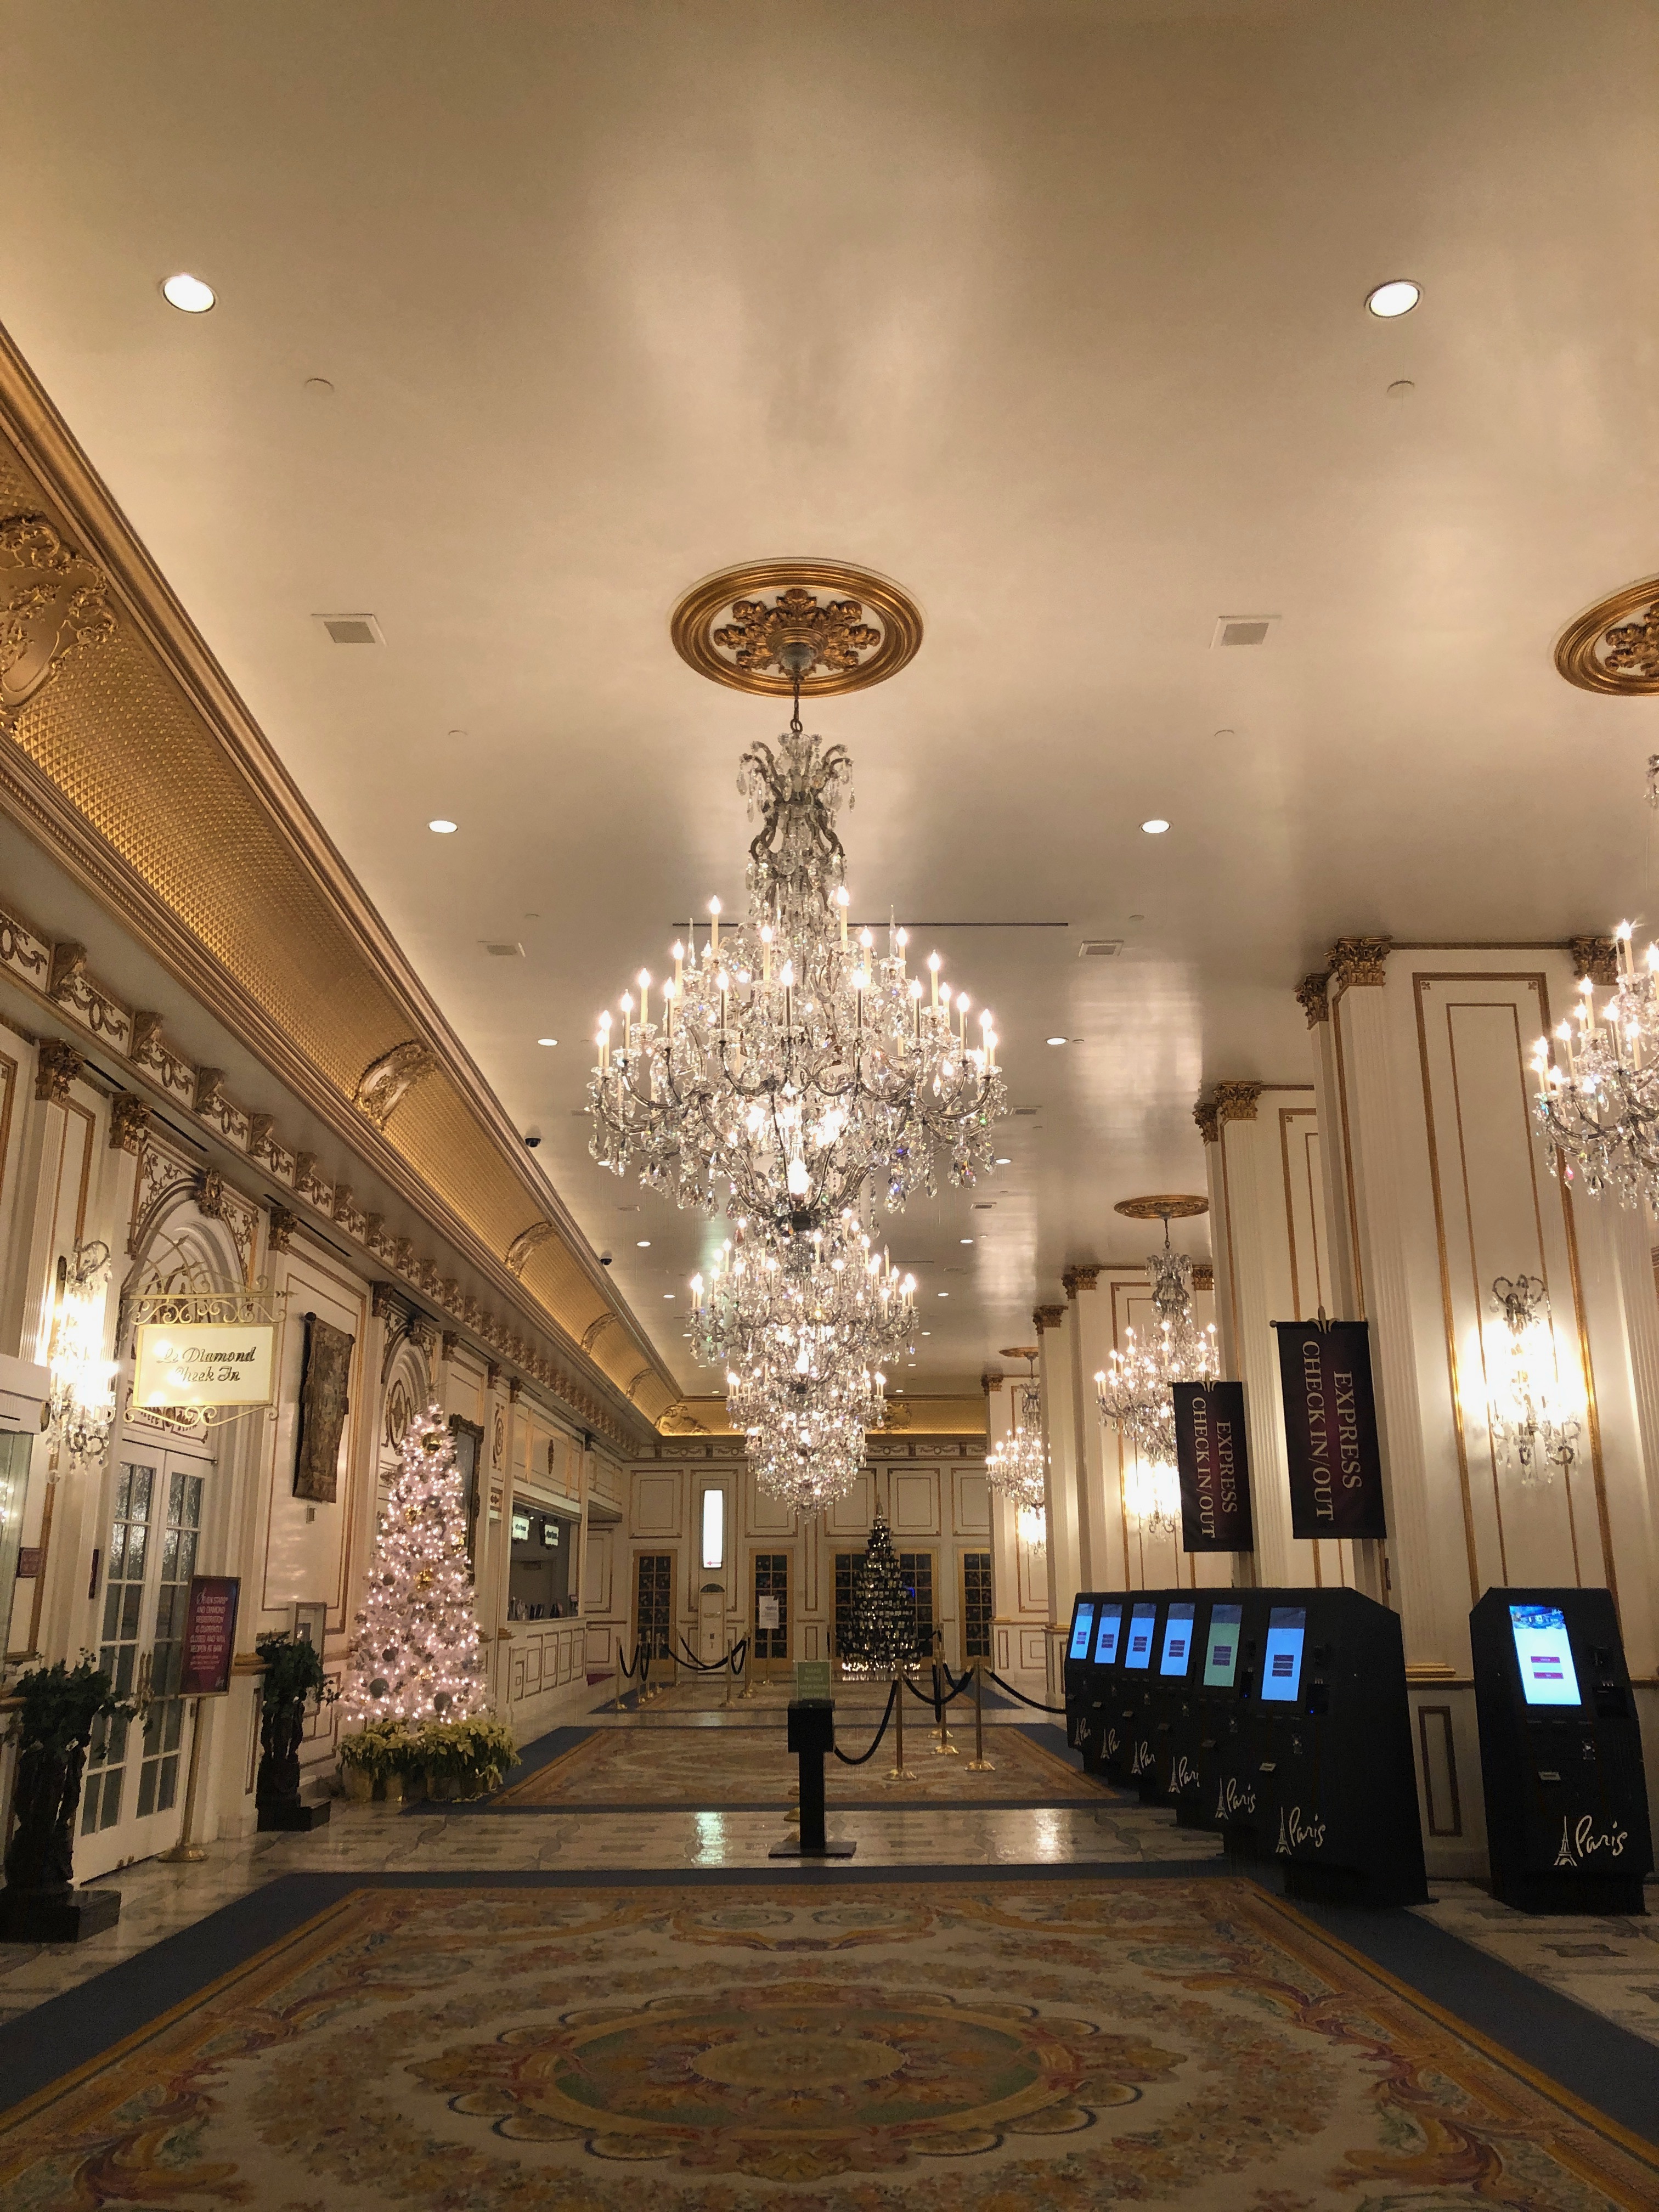 File:Paris Las Vegas lobby - Dec 2019 - Stierch 01.jpg - Wikimedia Commons